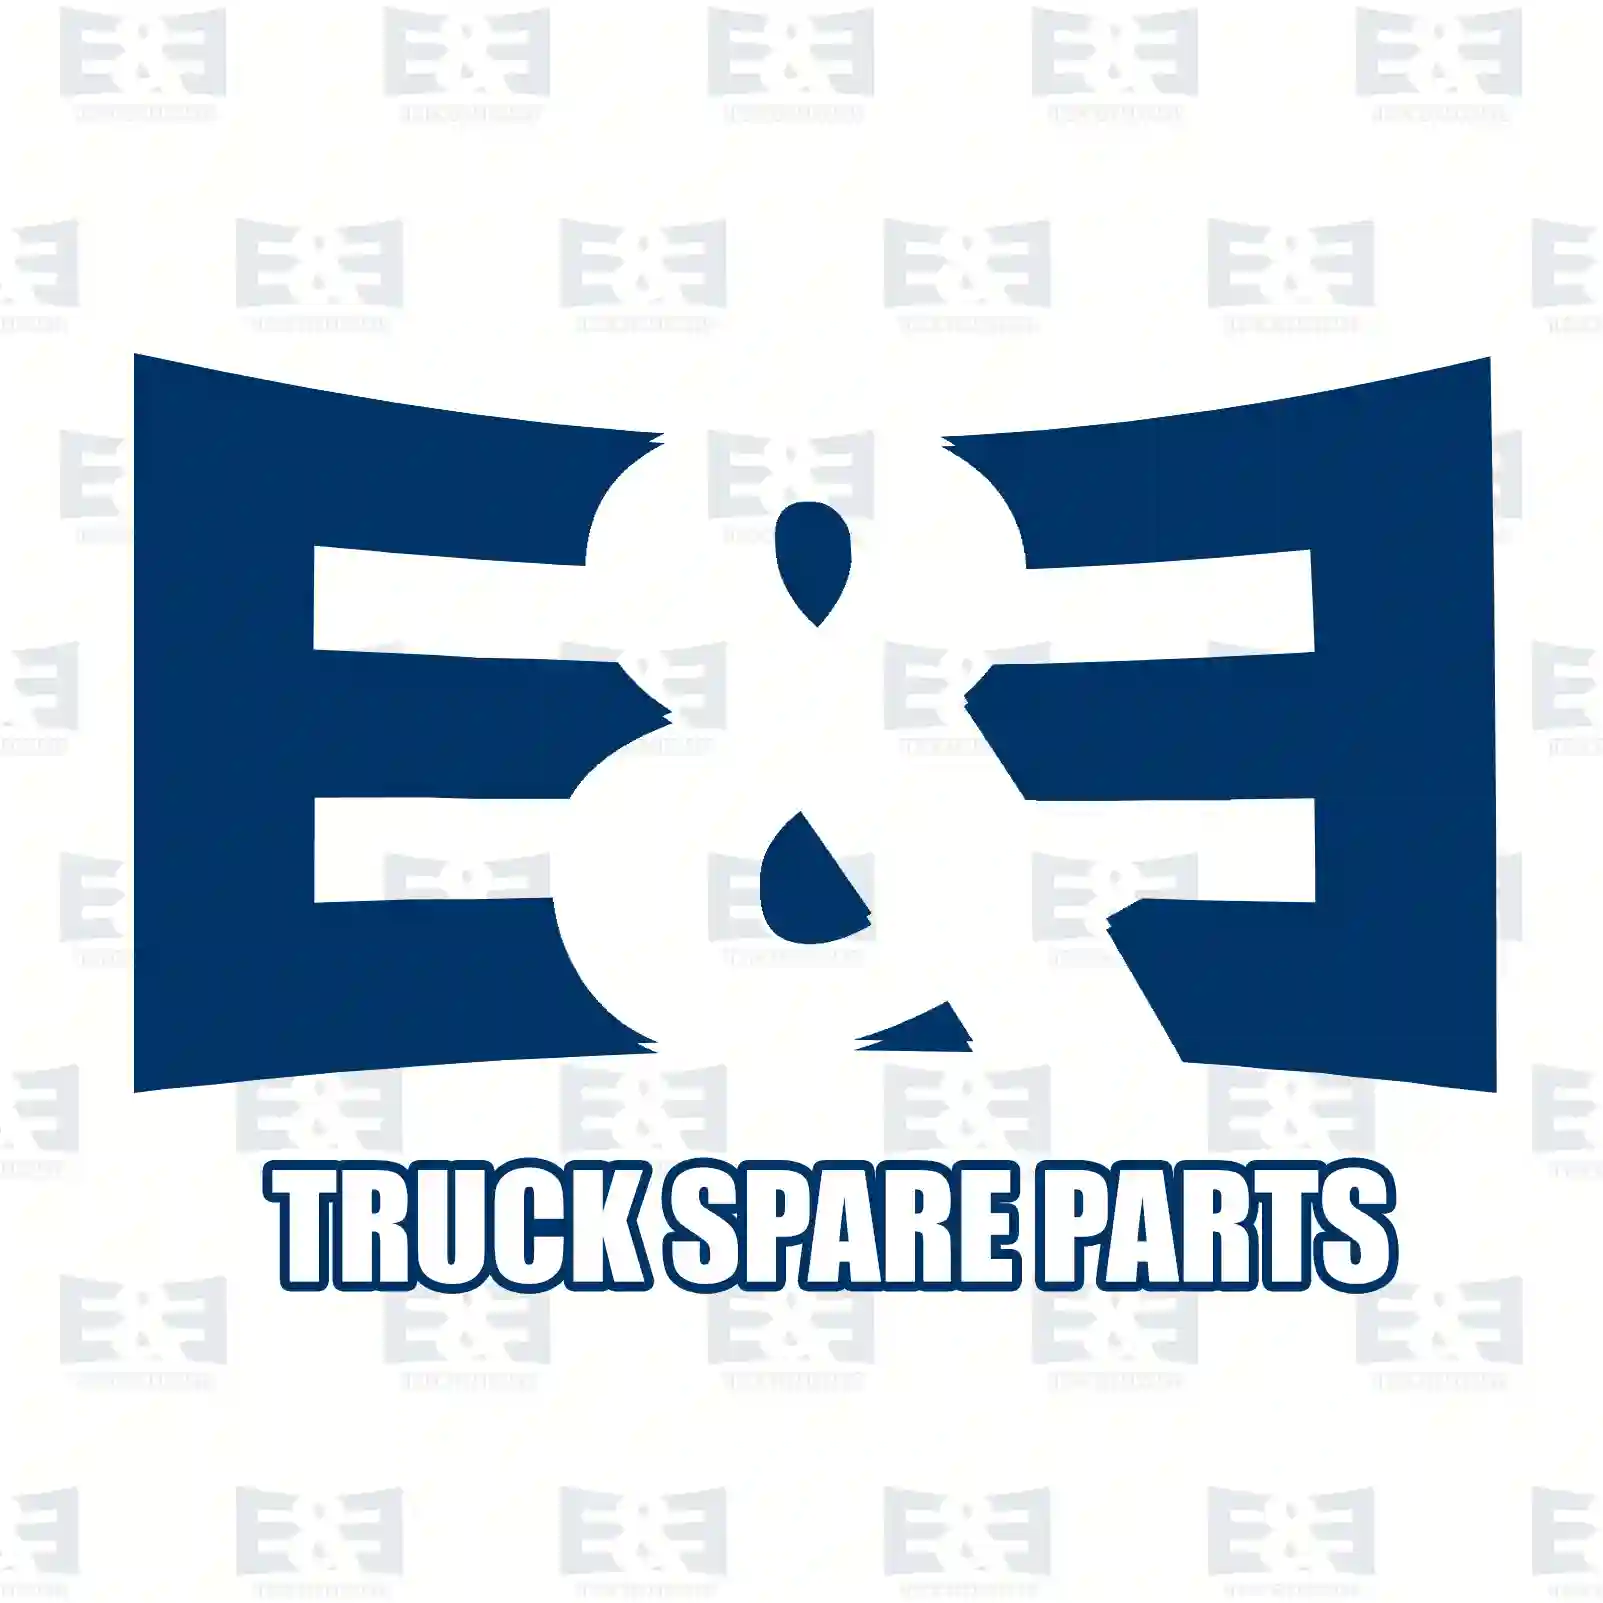 Brake cylinder, 2E2295734, 0064204724, 0074209724, 0084207224, , ||  2E2295734 E&E Truck Spare Parts | Truck Spare Parts, Auotomotive Spare Parts Brake cylinder, 2E2295734, 0064204724, 0074209724, 0084207224, , ||  2E2295734 E&E Truck Spare Parts | Truck Spare Parts, Auotomotive Spare Parts